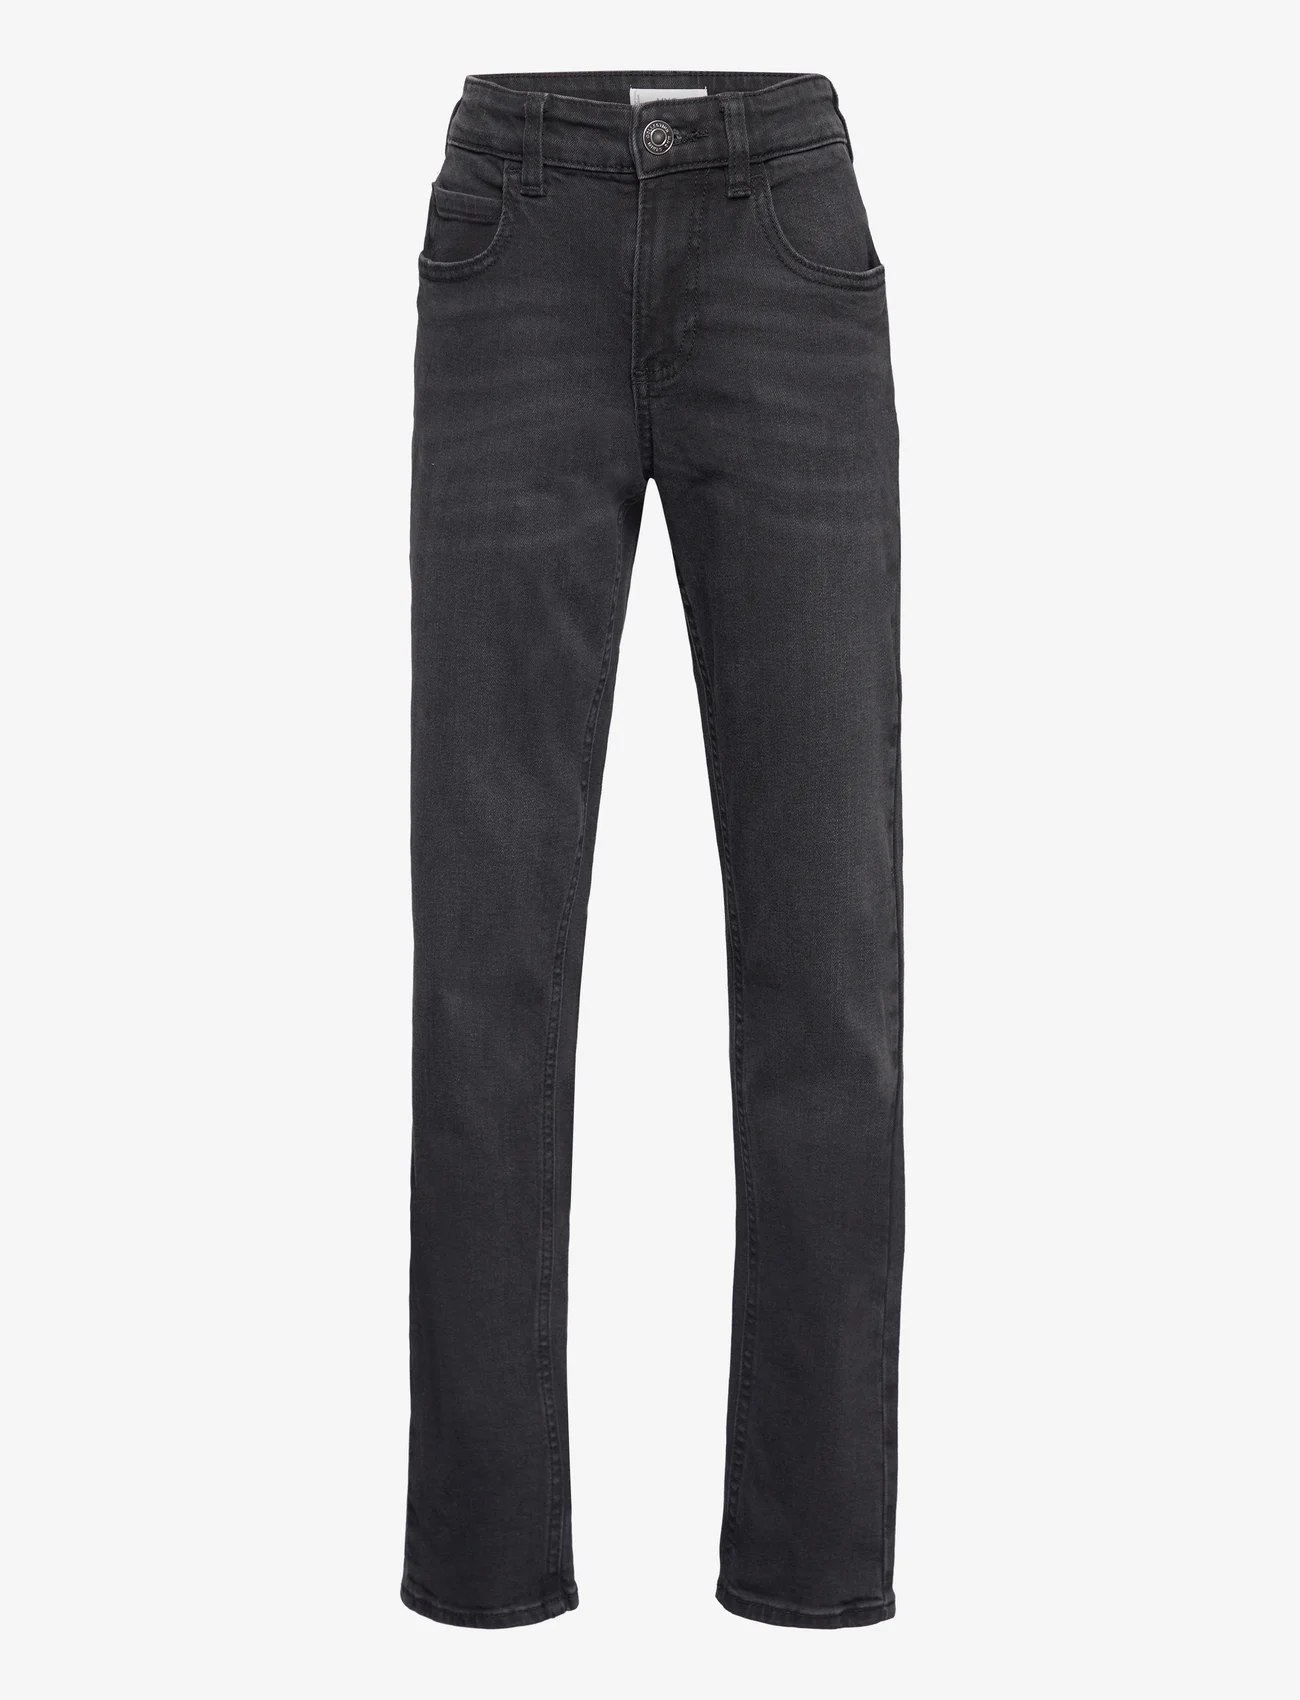 Mango - Slim-fit jeans - skinny jeans - open grey - 0